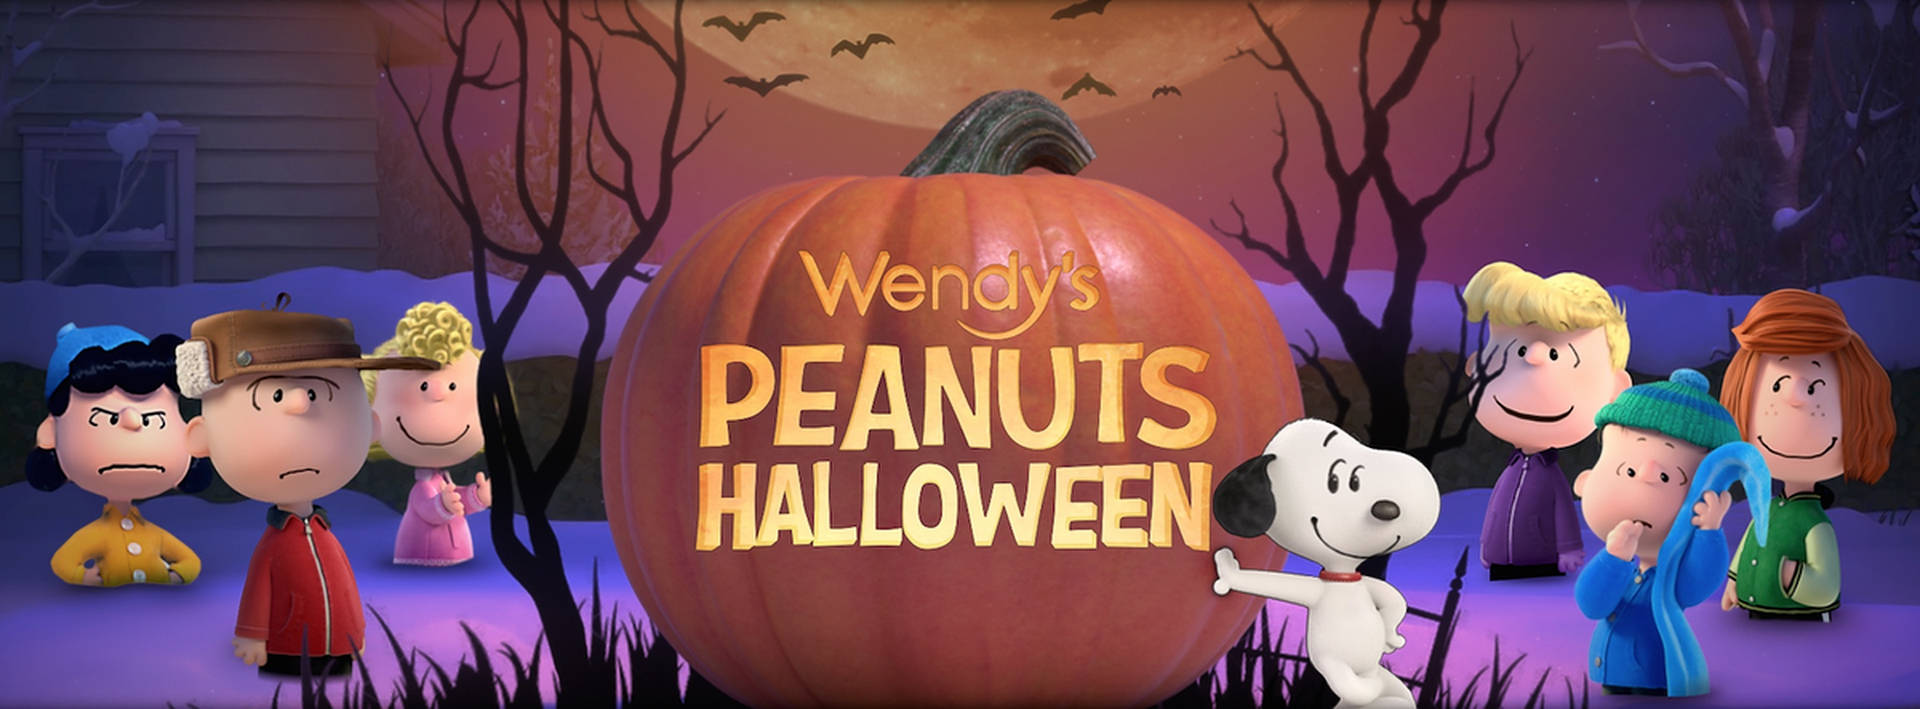 Charlie Brown Wendy’s Peanuts Halloween